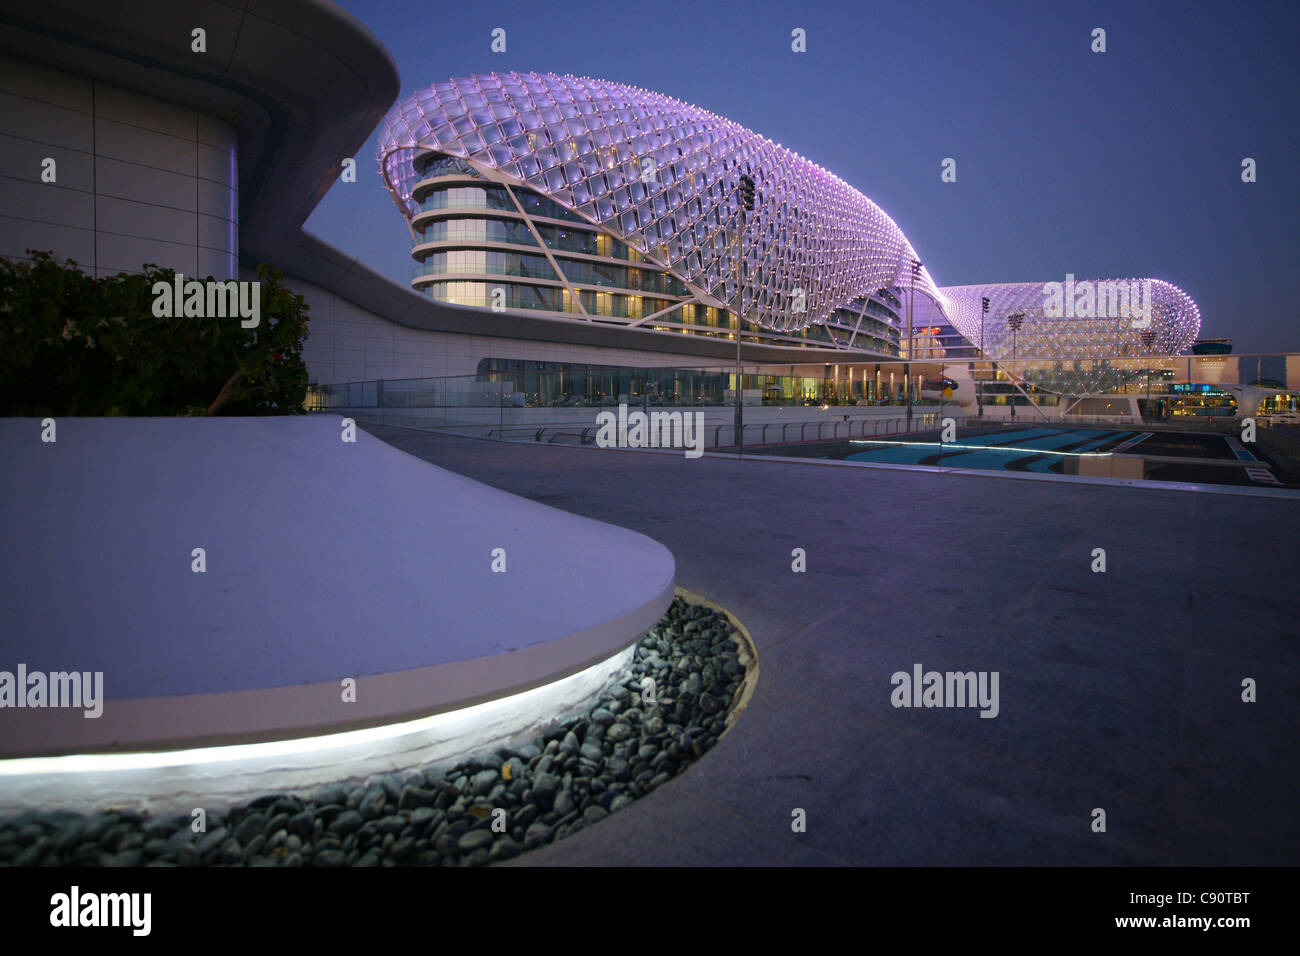 El Yas Hotel, un hotel construido a través de la F1, el Circuito Yas Marina Yas Island, Abu Dhabi, Emiratos Árabes Unidos, EAU Foto de stock